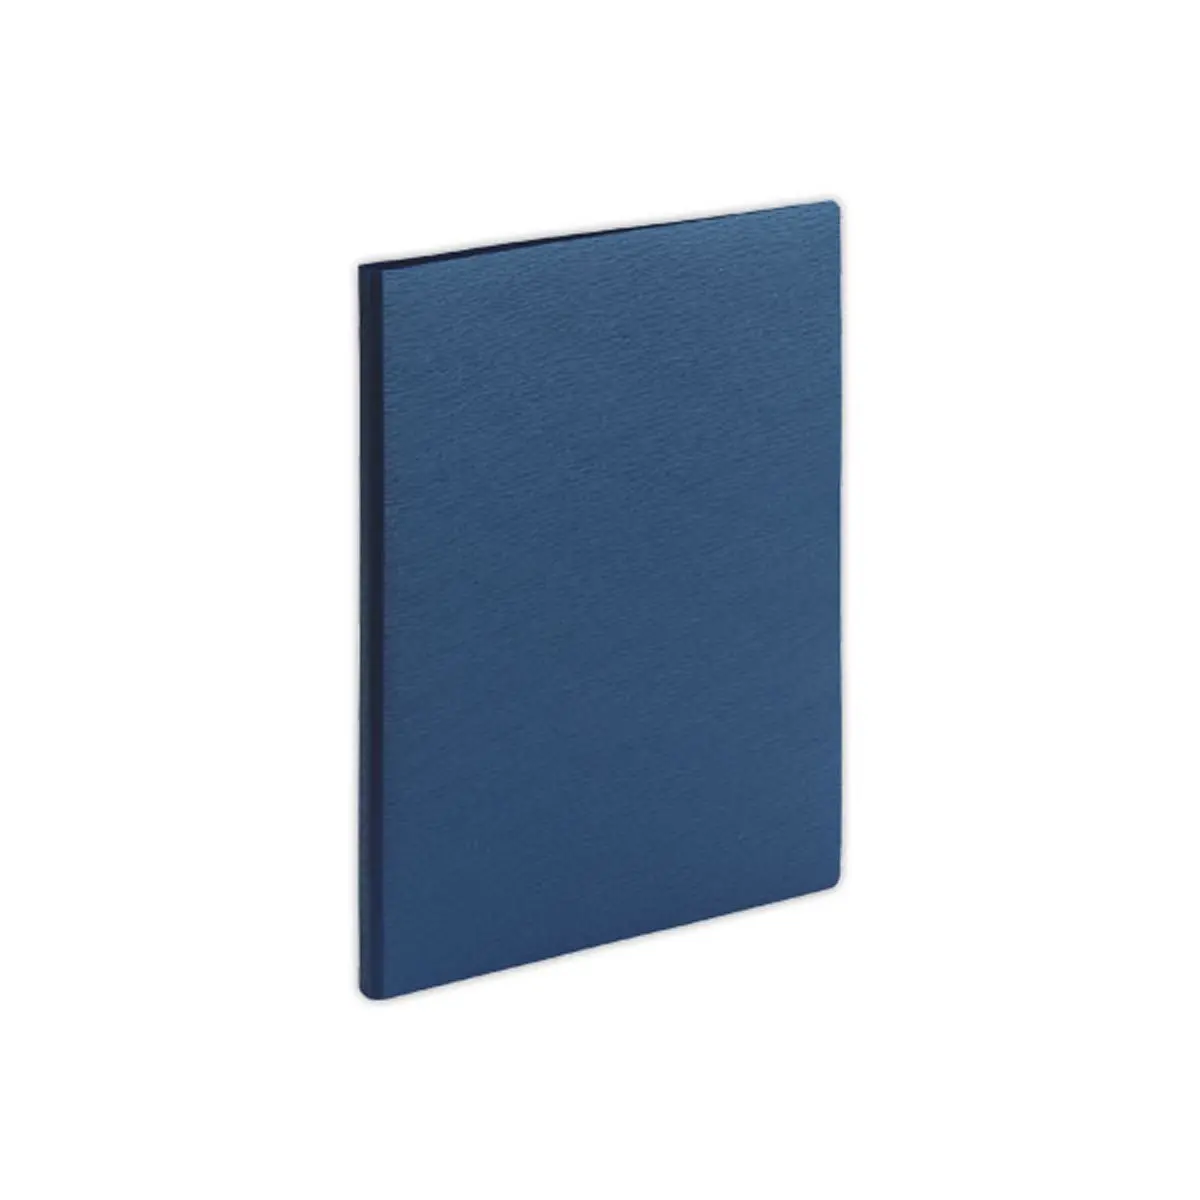 Protège-documents - 20 poches - A4 - Bleu foncé photo du produit